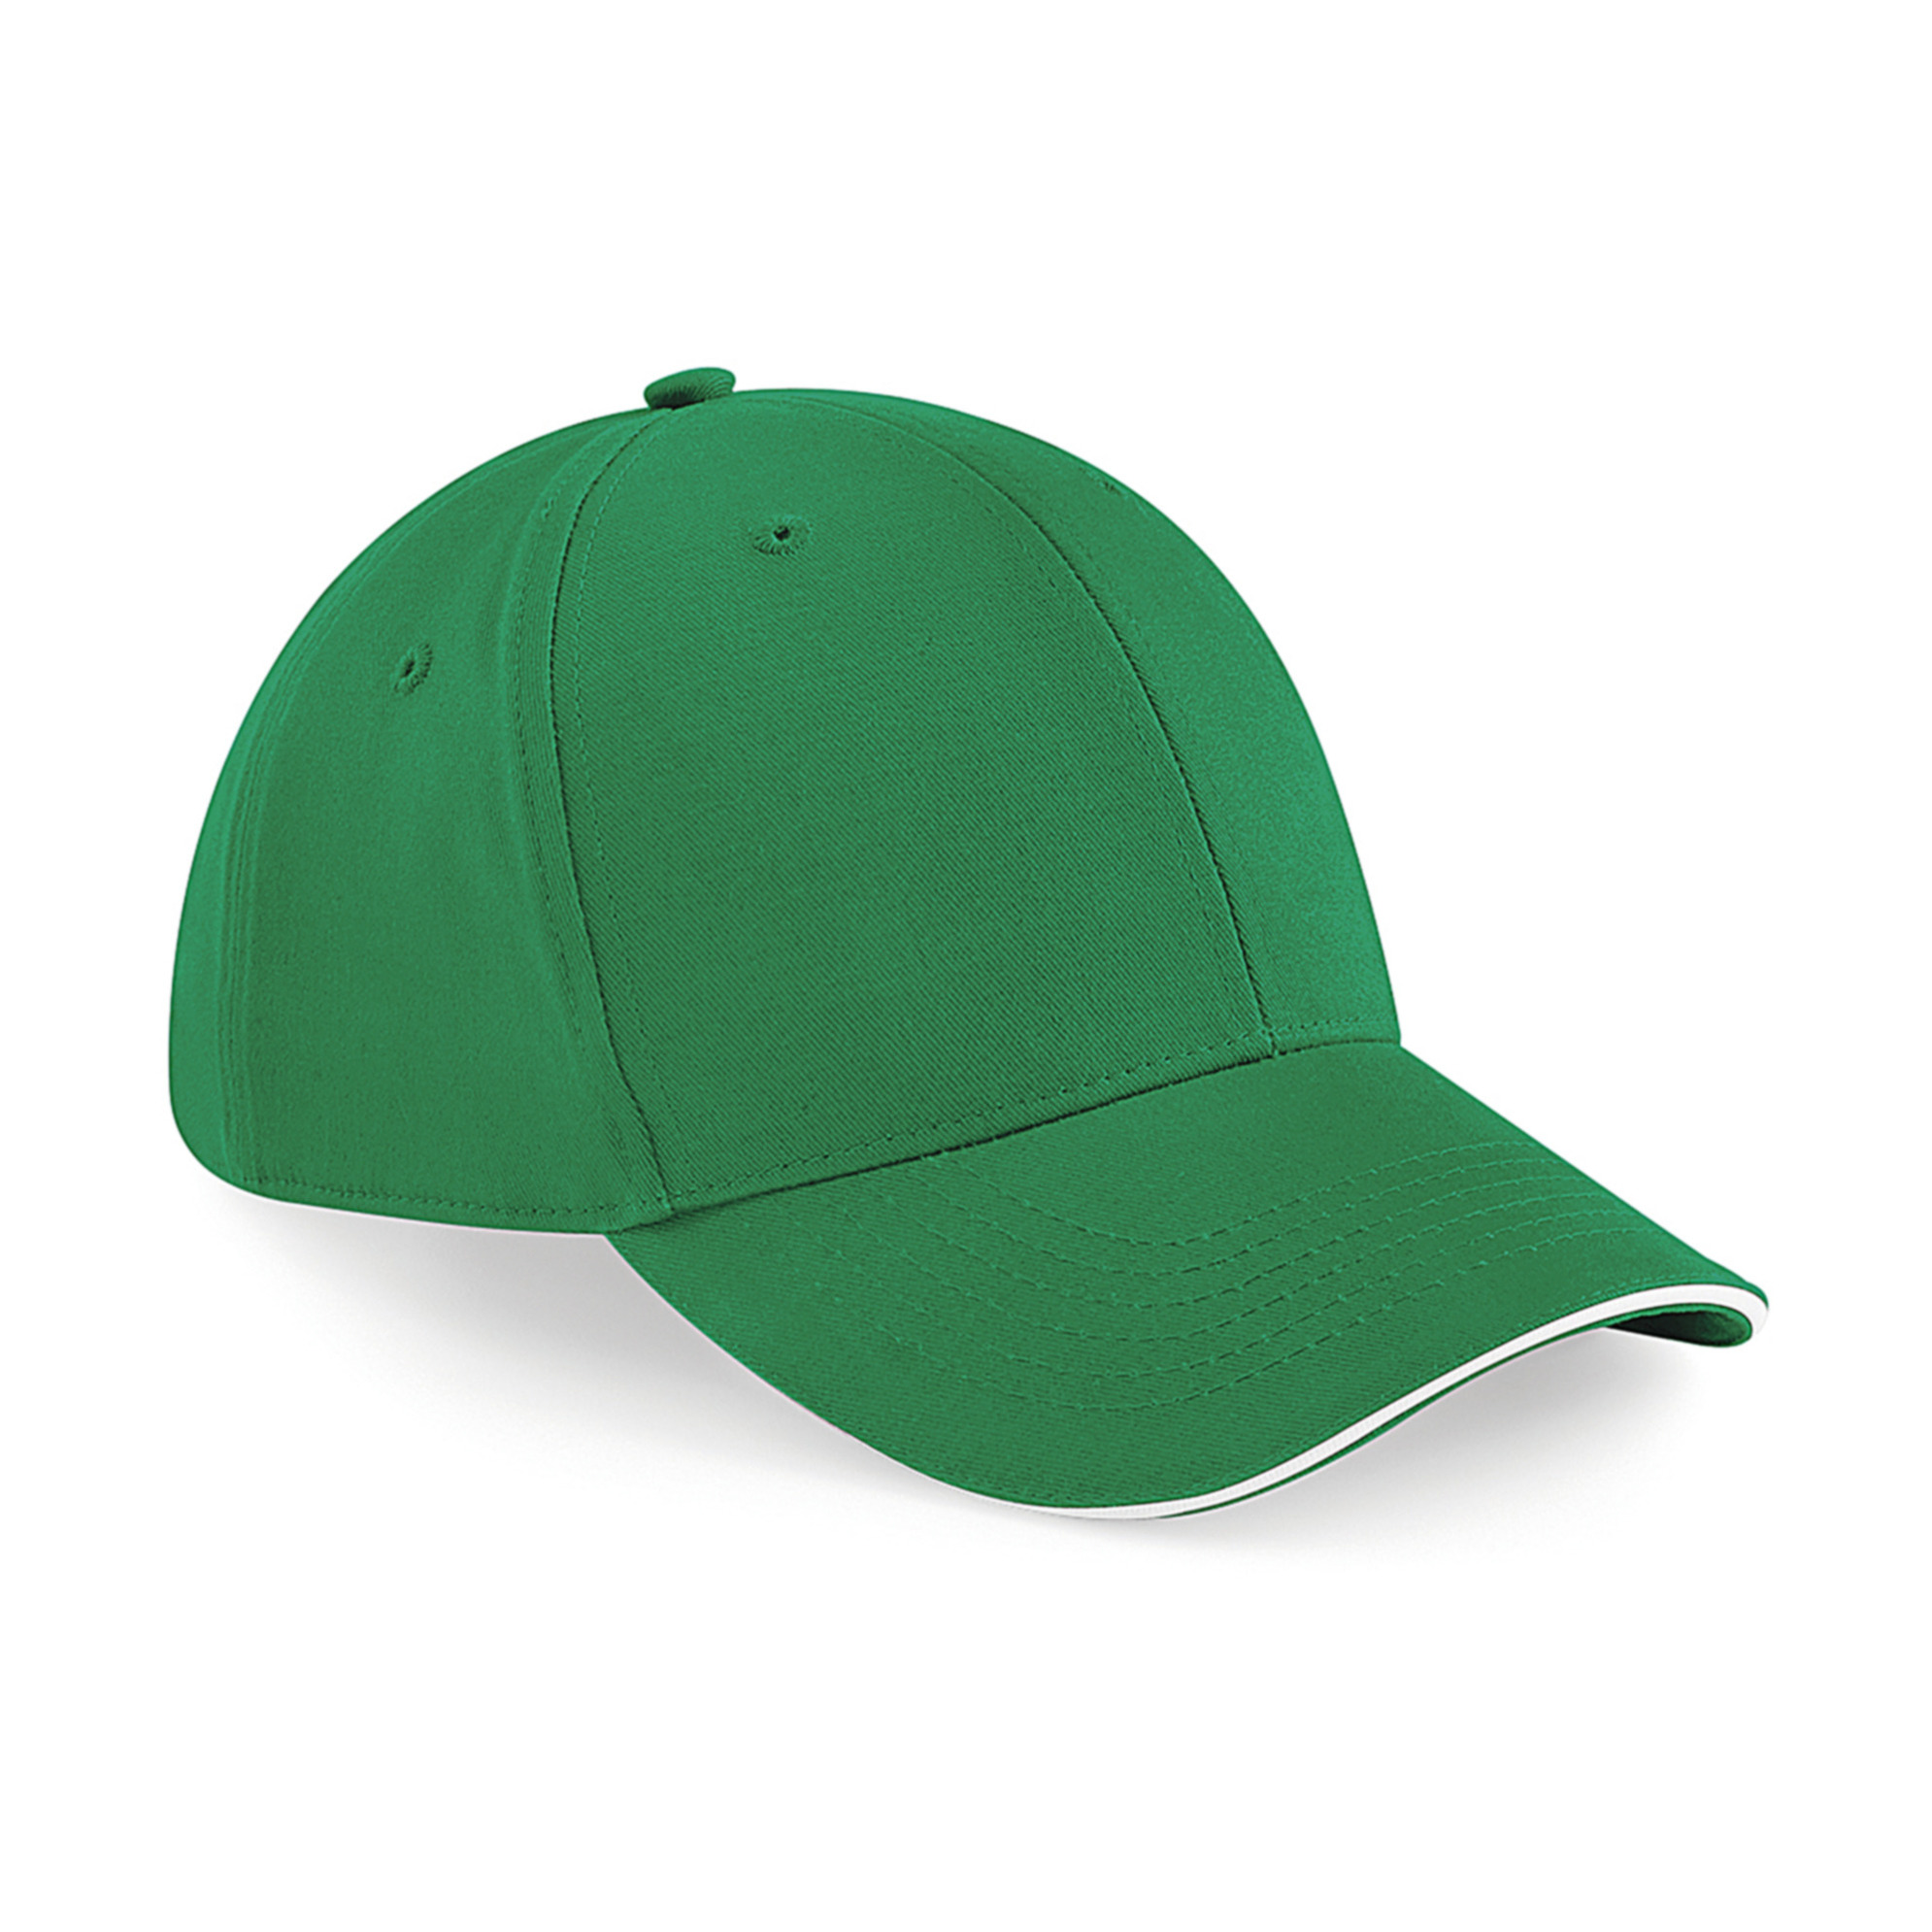 6-panel baseballcap groen/wit voor volwassenen